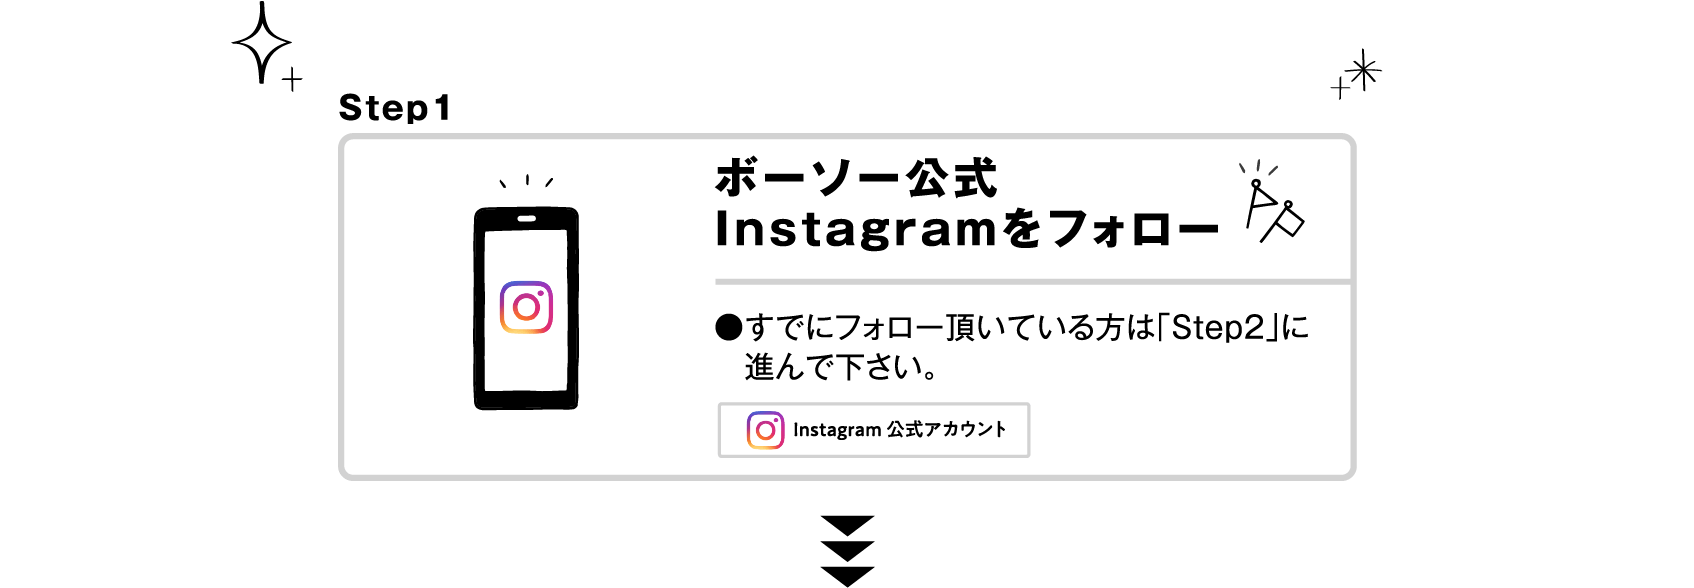 ボーソー公式Instagramをフォロー